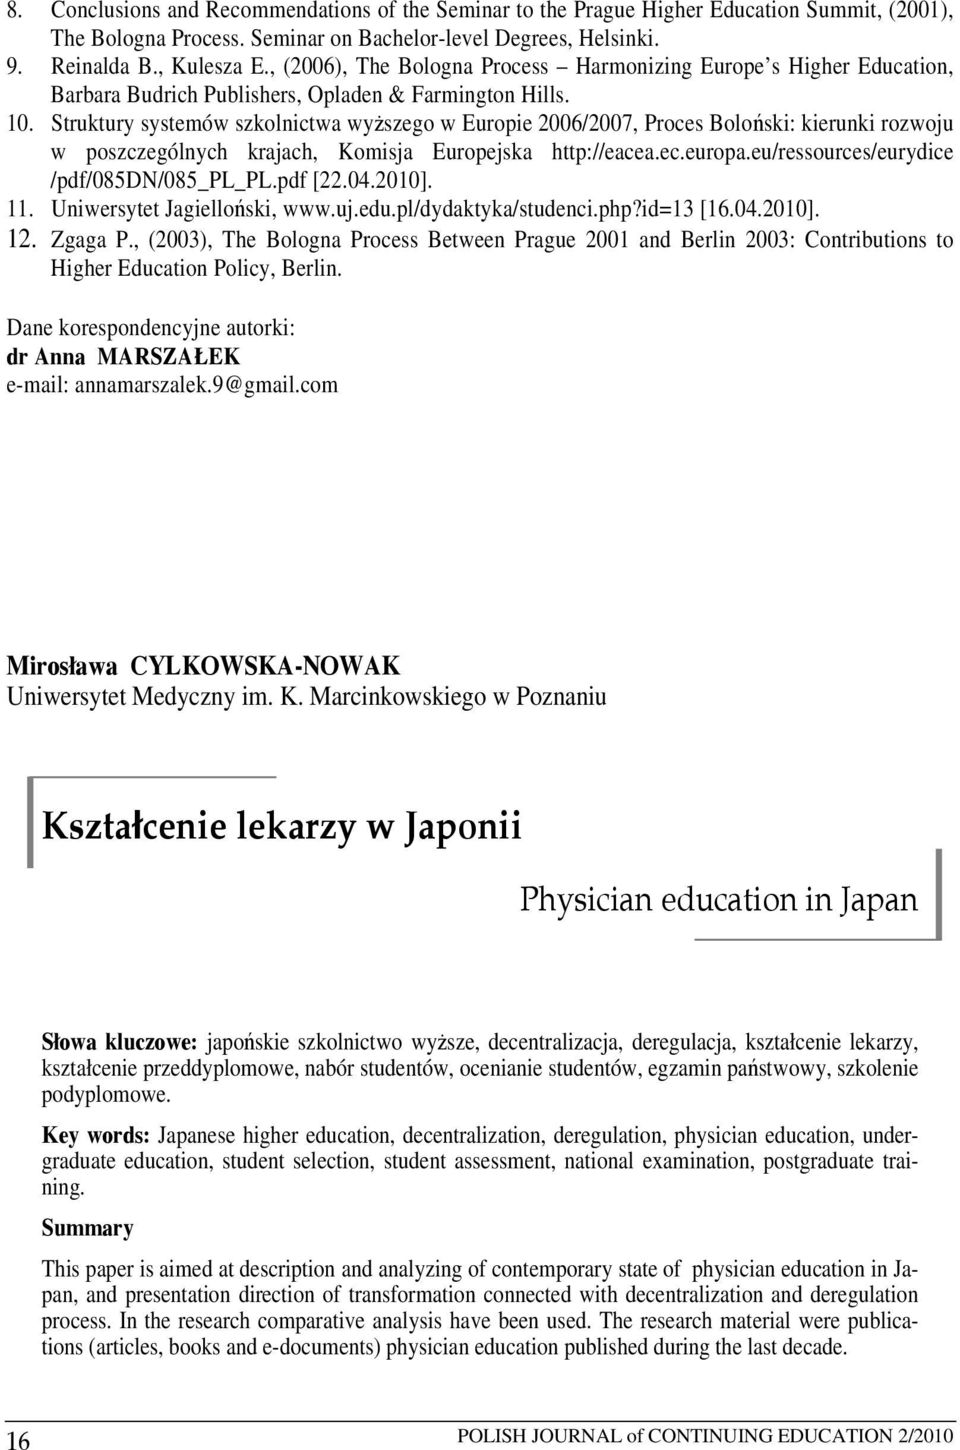 Struktury systemów szkolnictwa wyższego w Europie 2006/2007, Proces Boloński: kierunki rozwoju w poszczególnych krajach, Komisja Europejska http://eacea.ec.europa.